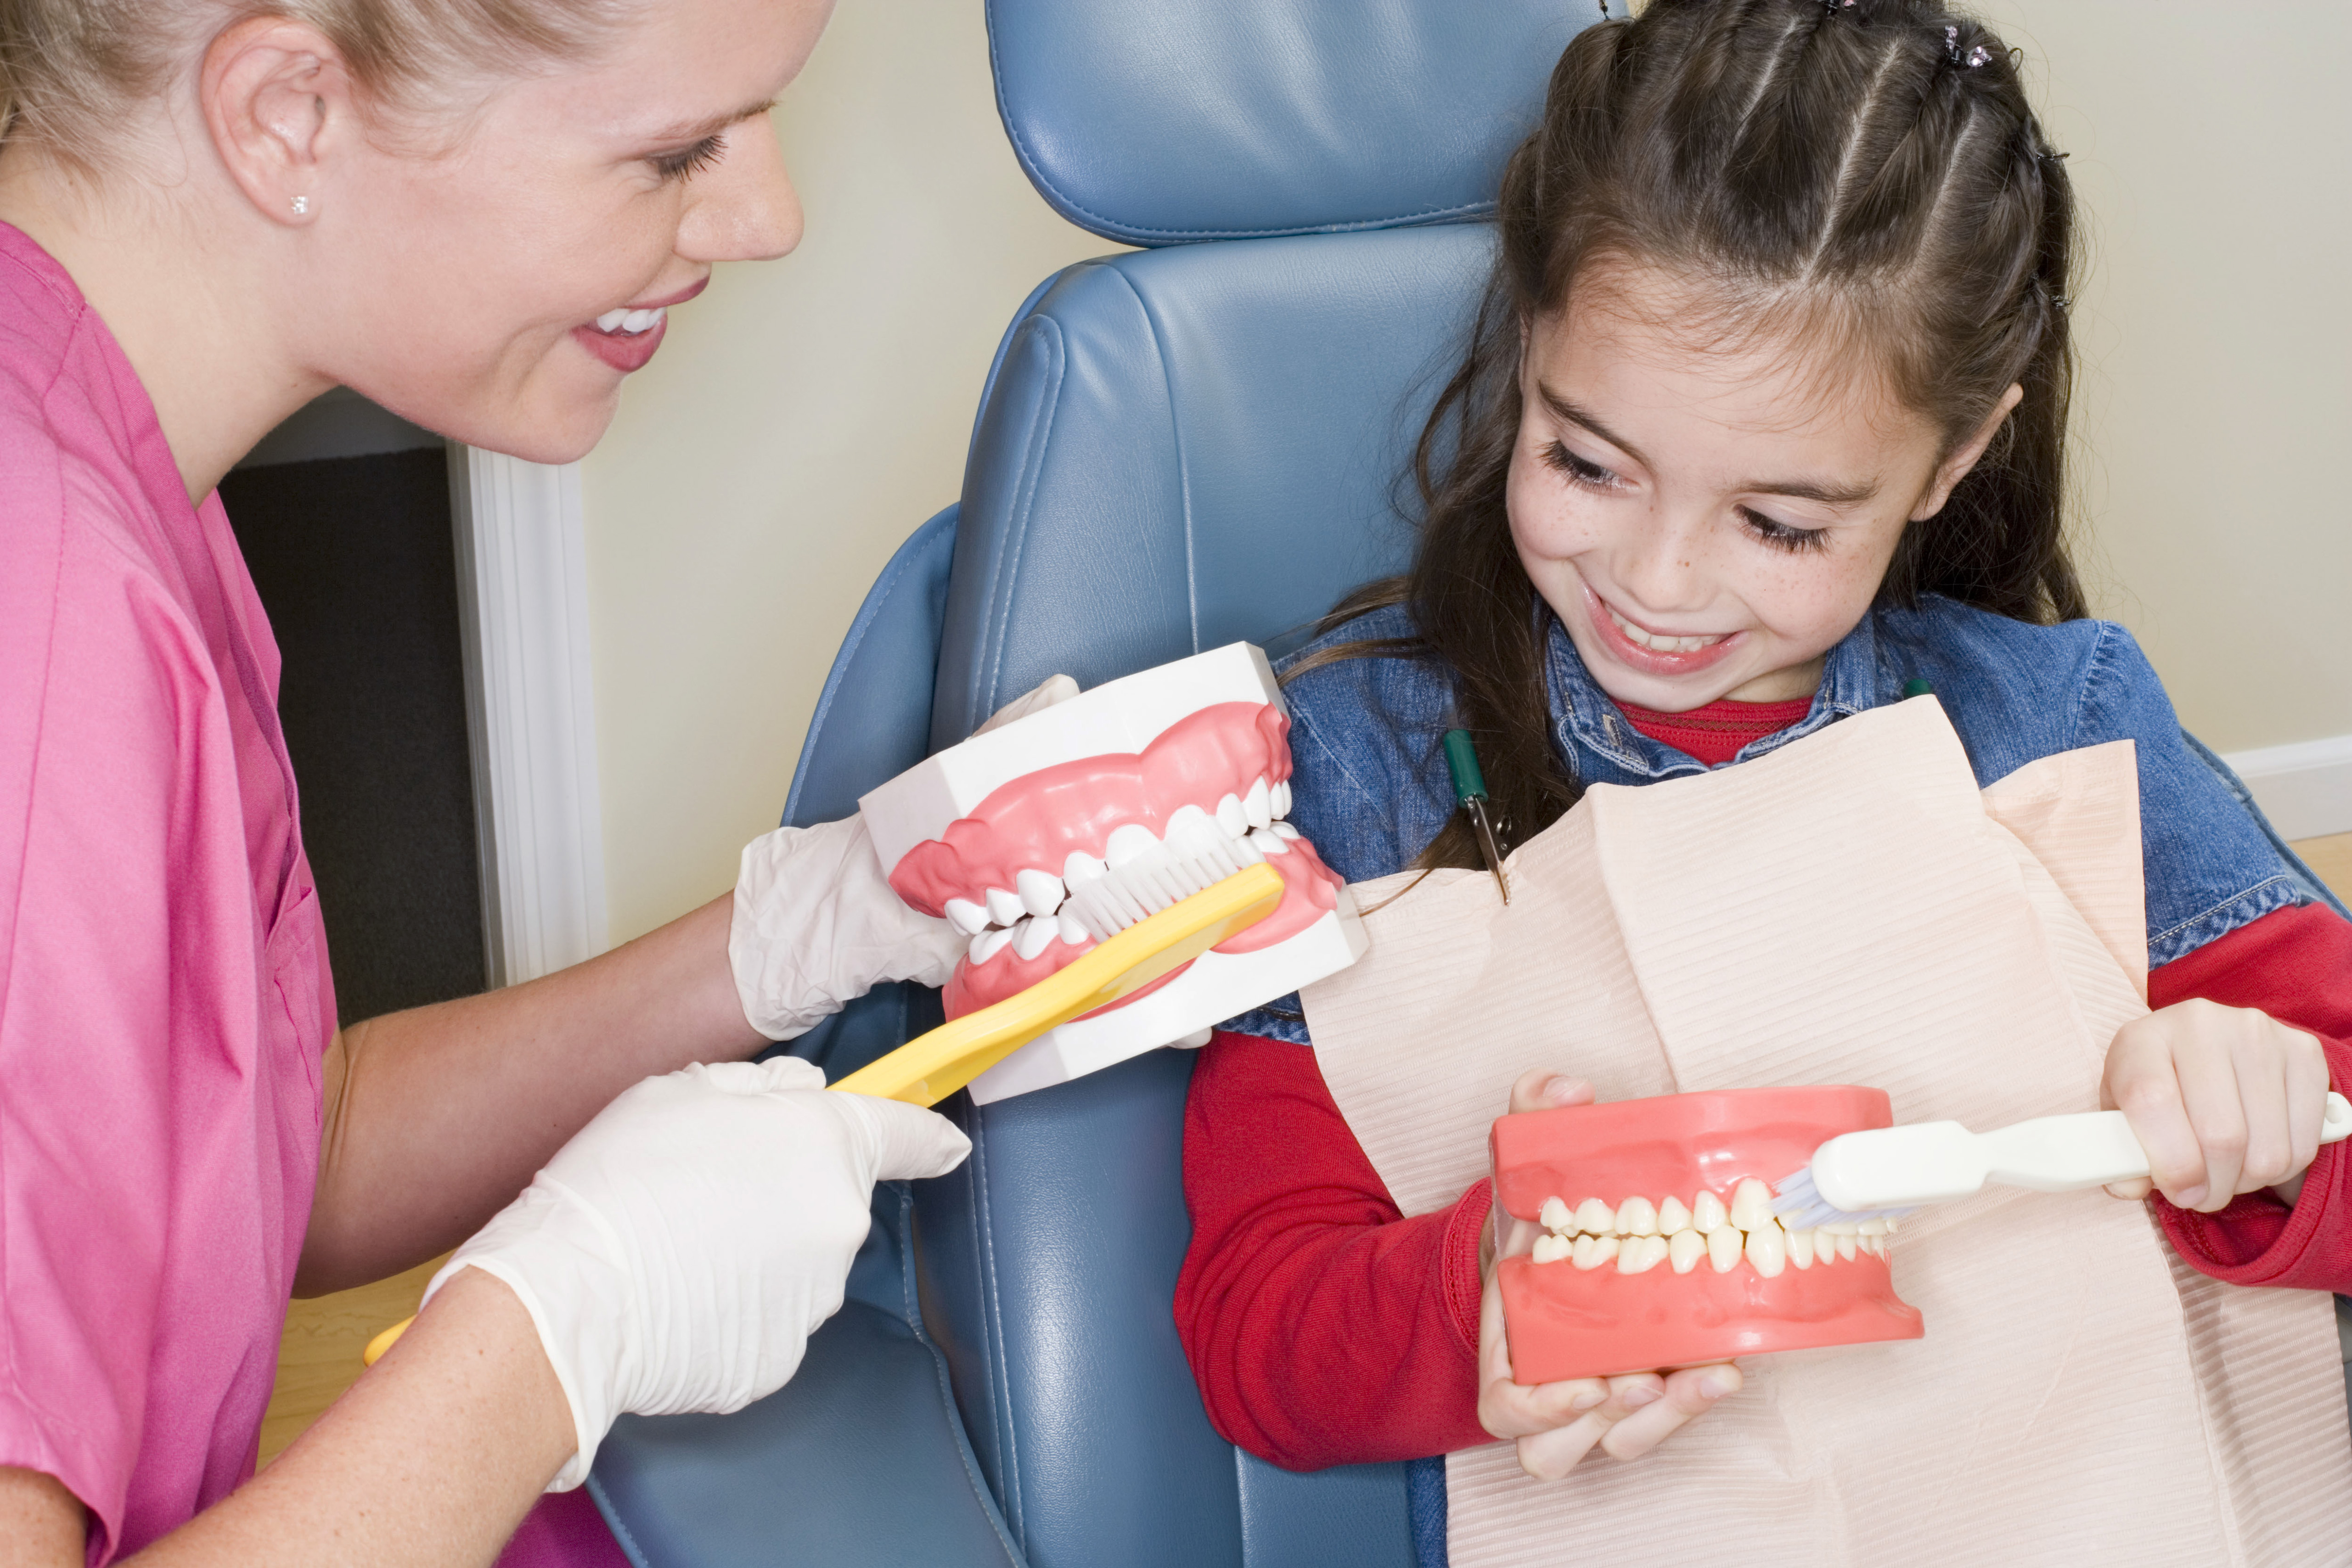 Dental hygienist gives handjob